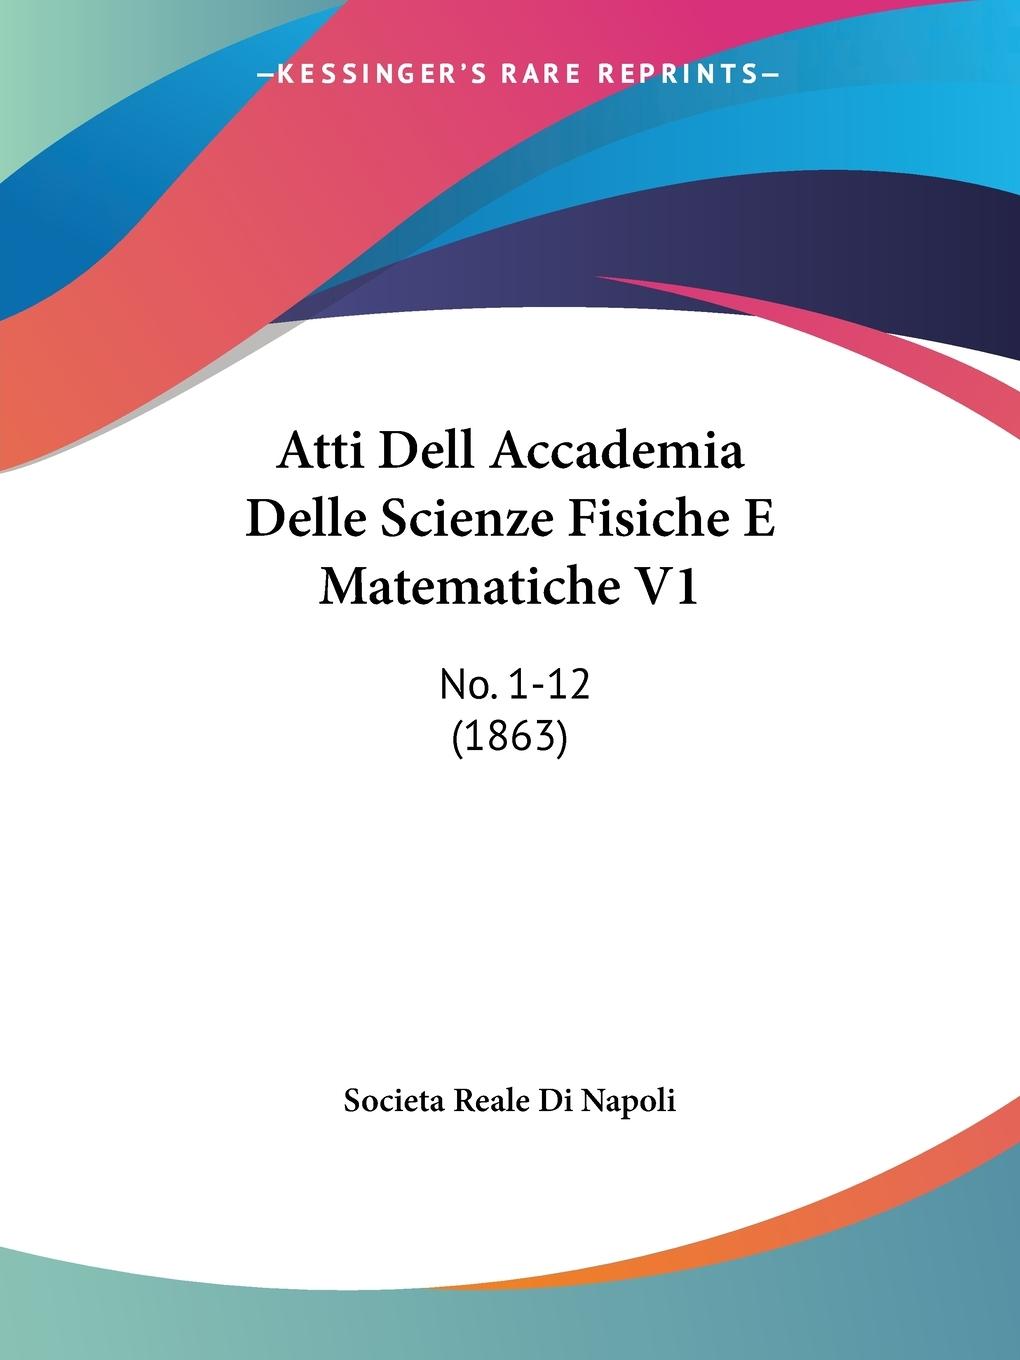 Atti Dell Accademia Delle Scienze Fisiche E Matematiche V1 - Societa Reale Di Napoli